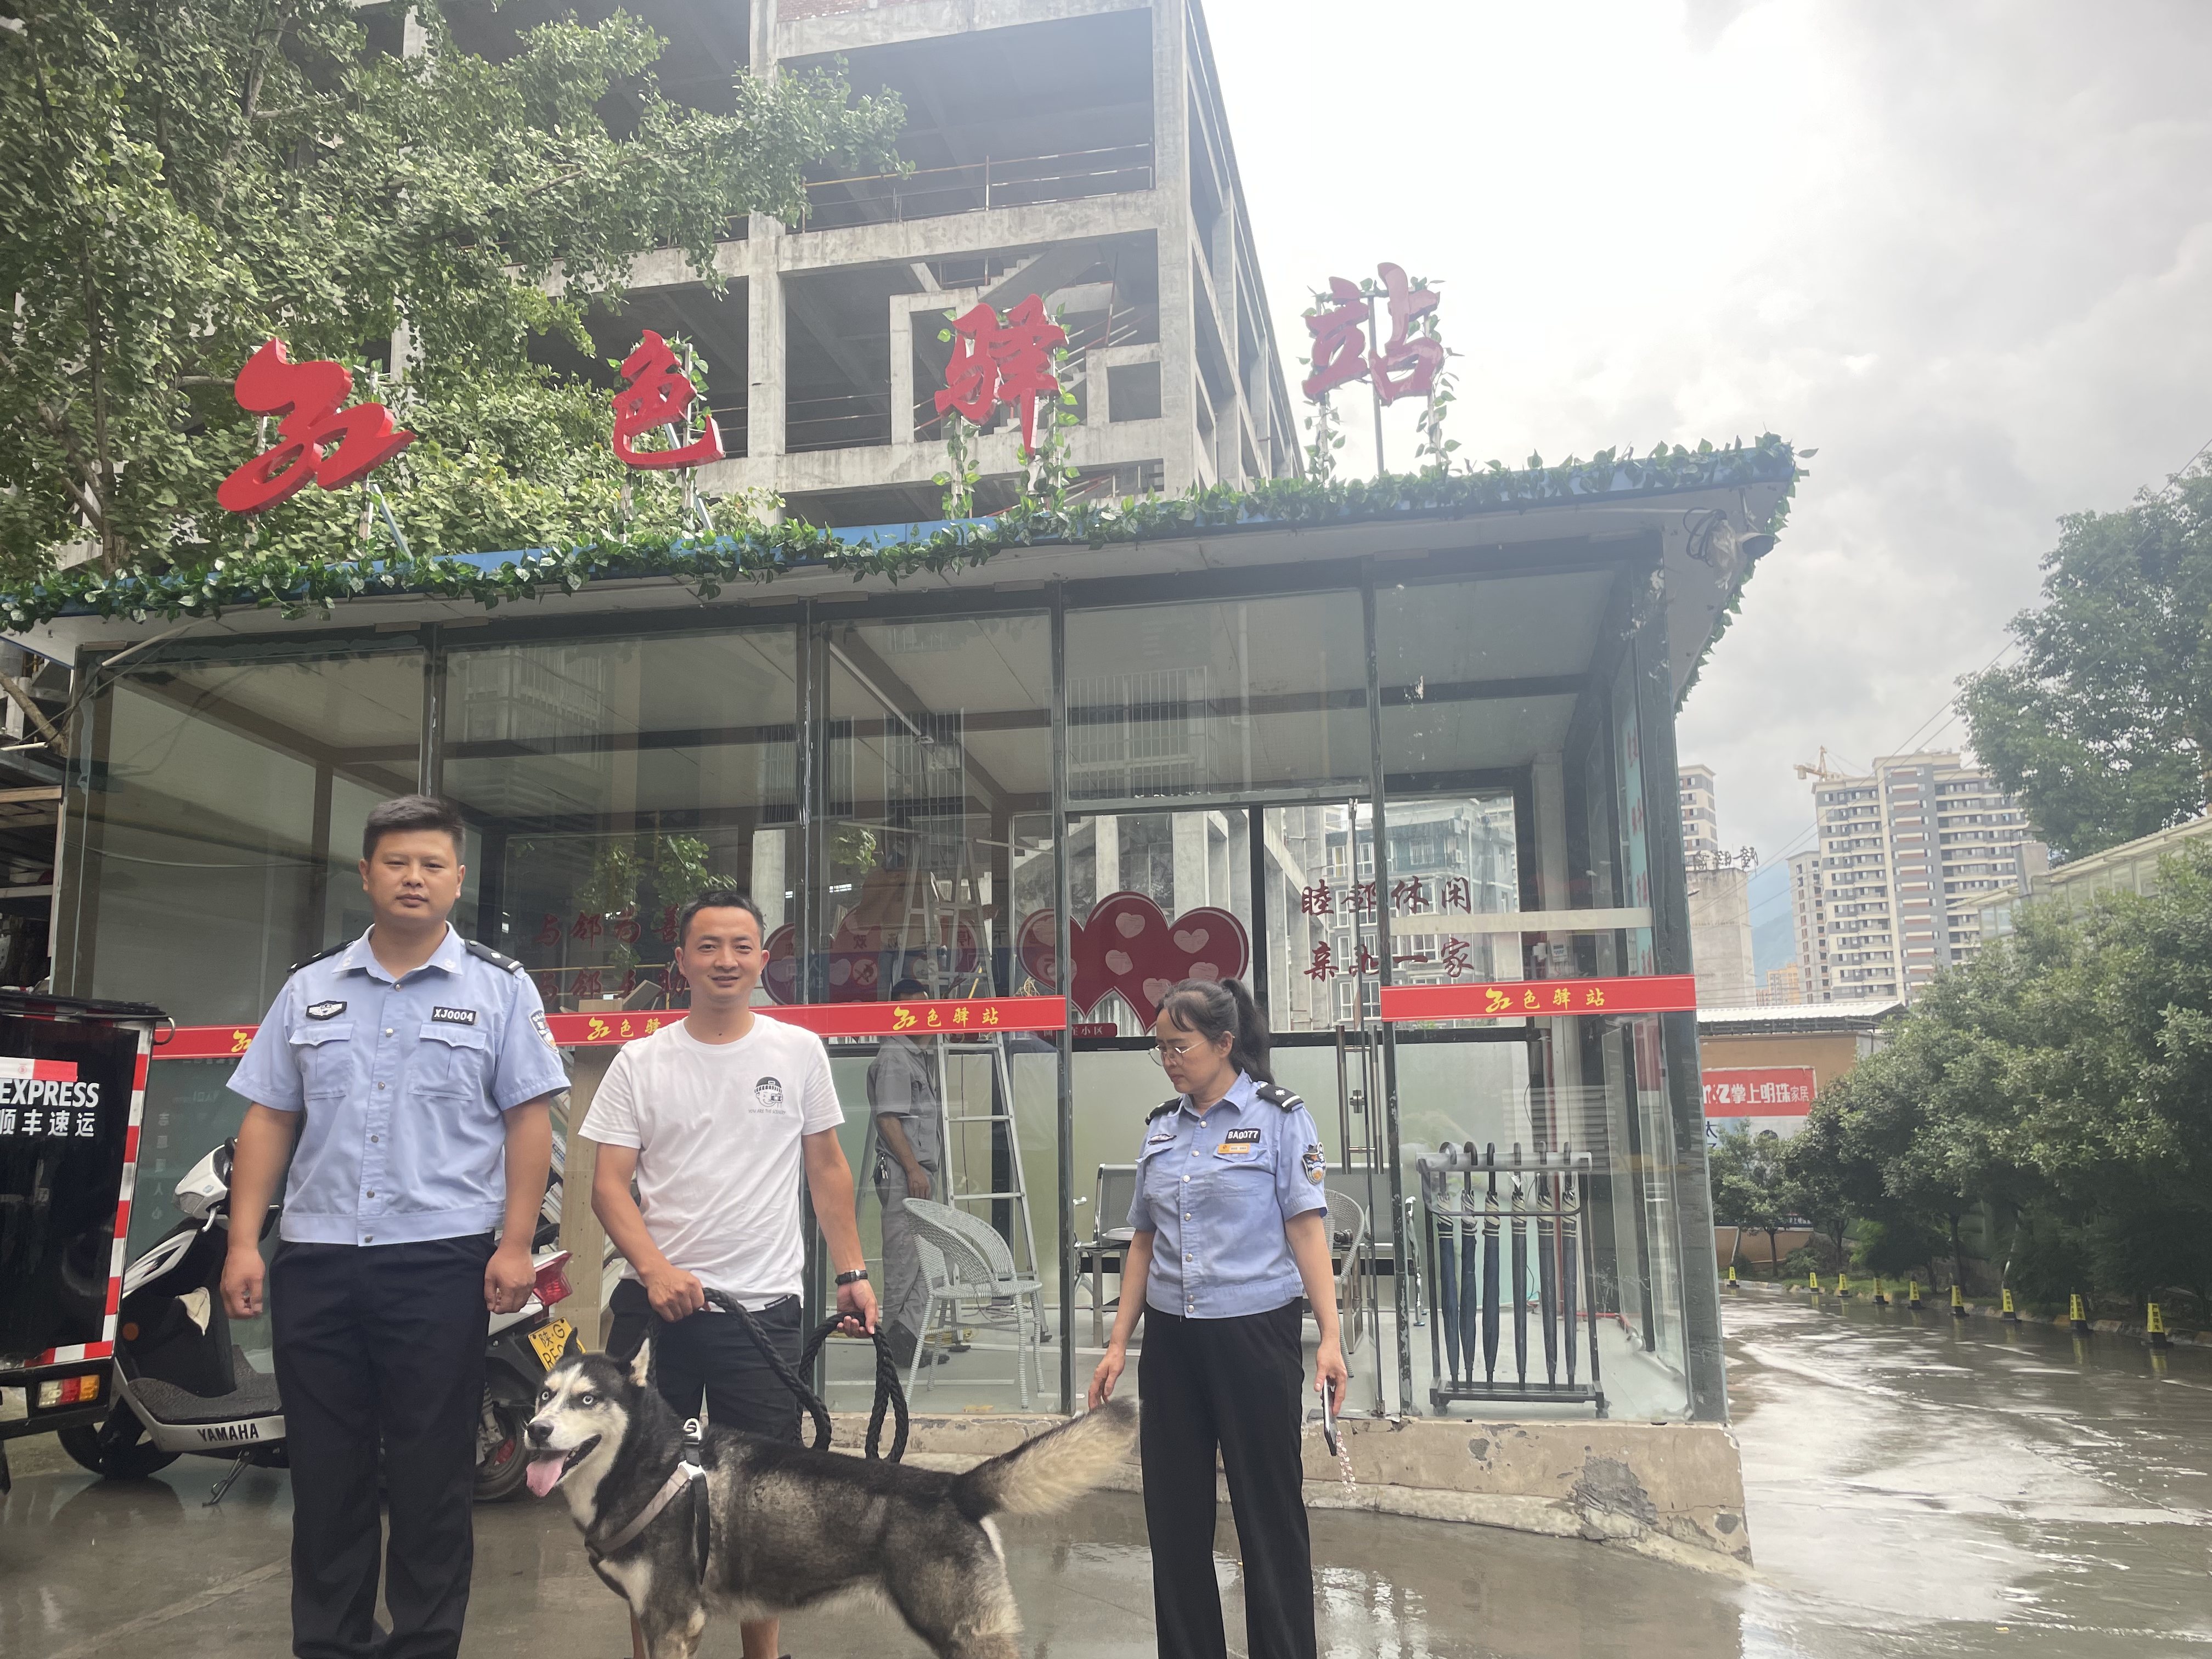 城关镇李家台社区：大型犬突闯小区 驻村民警迅速徒手控制消除安全隐患